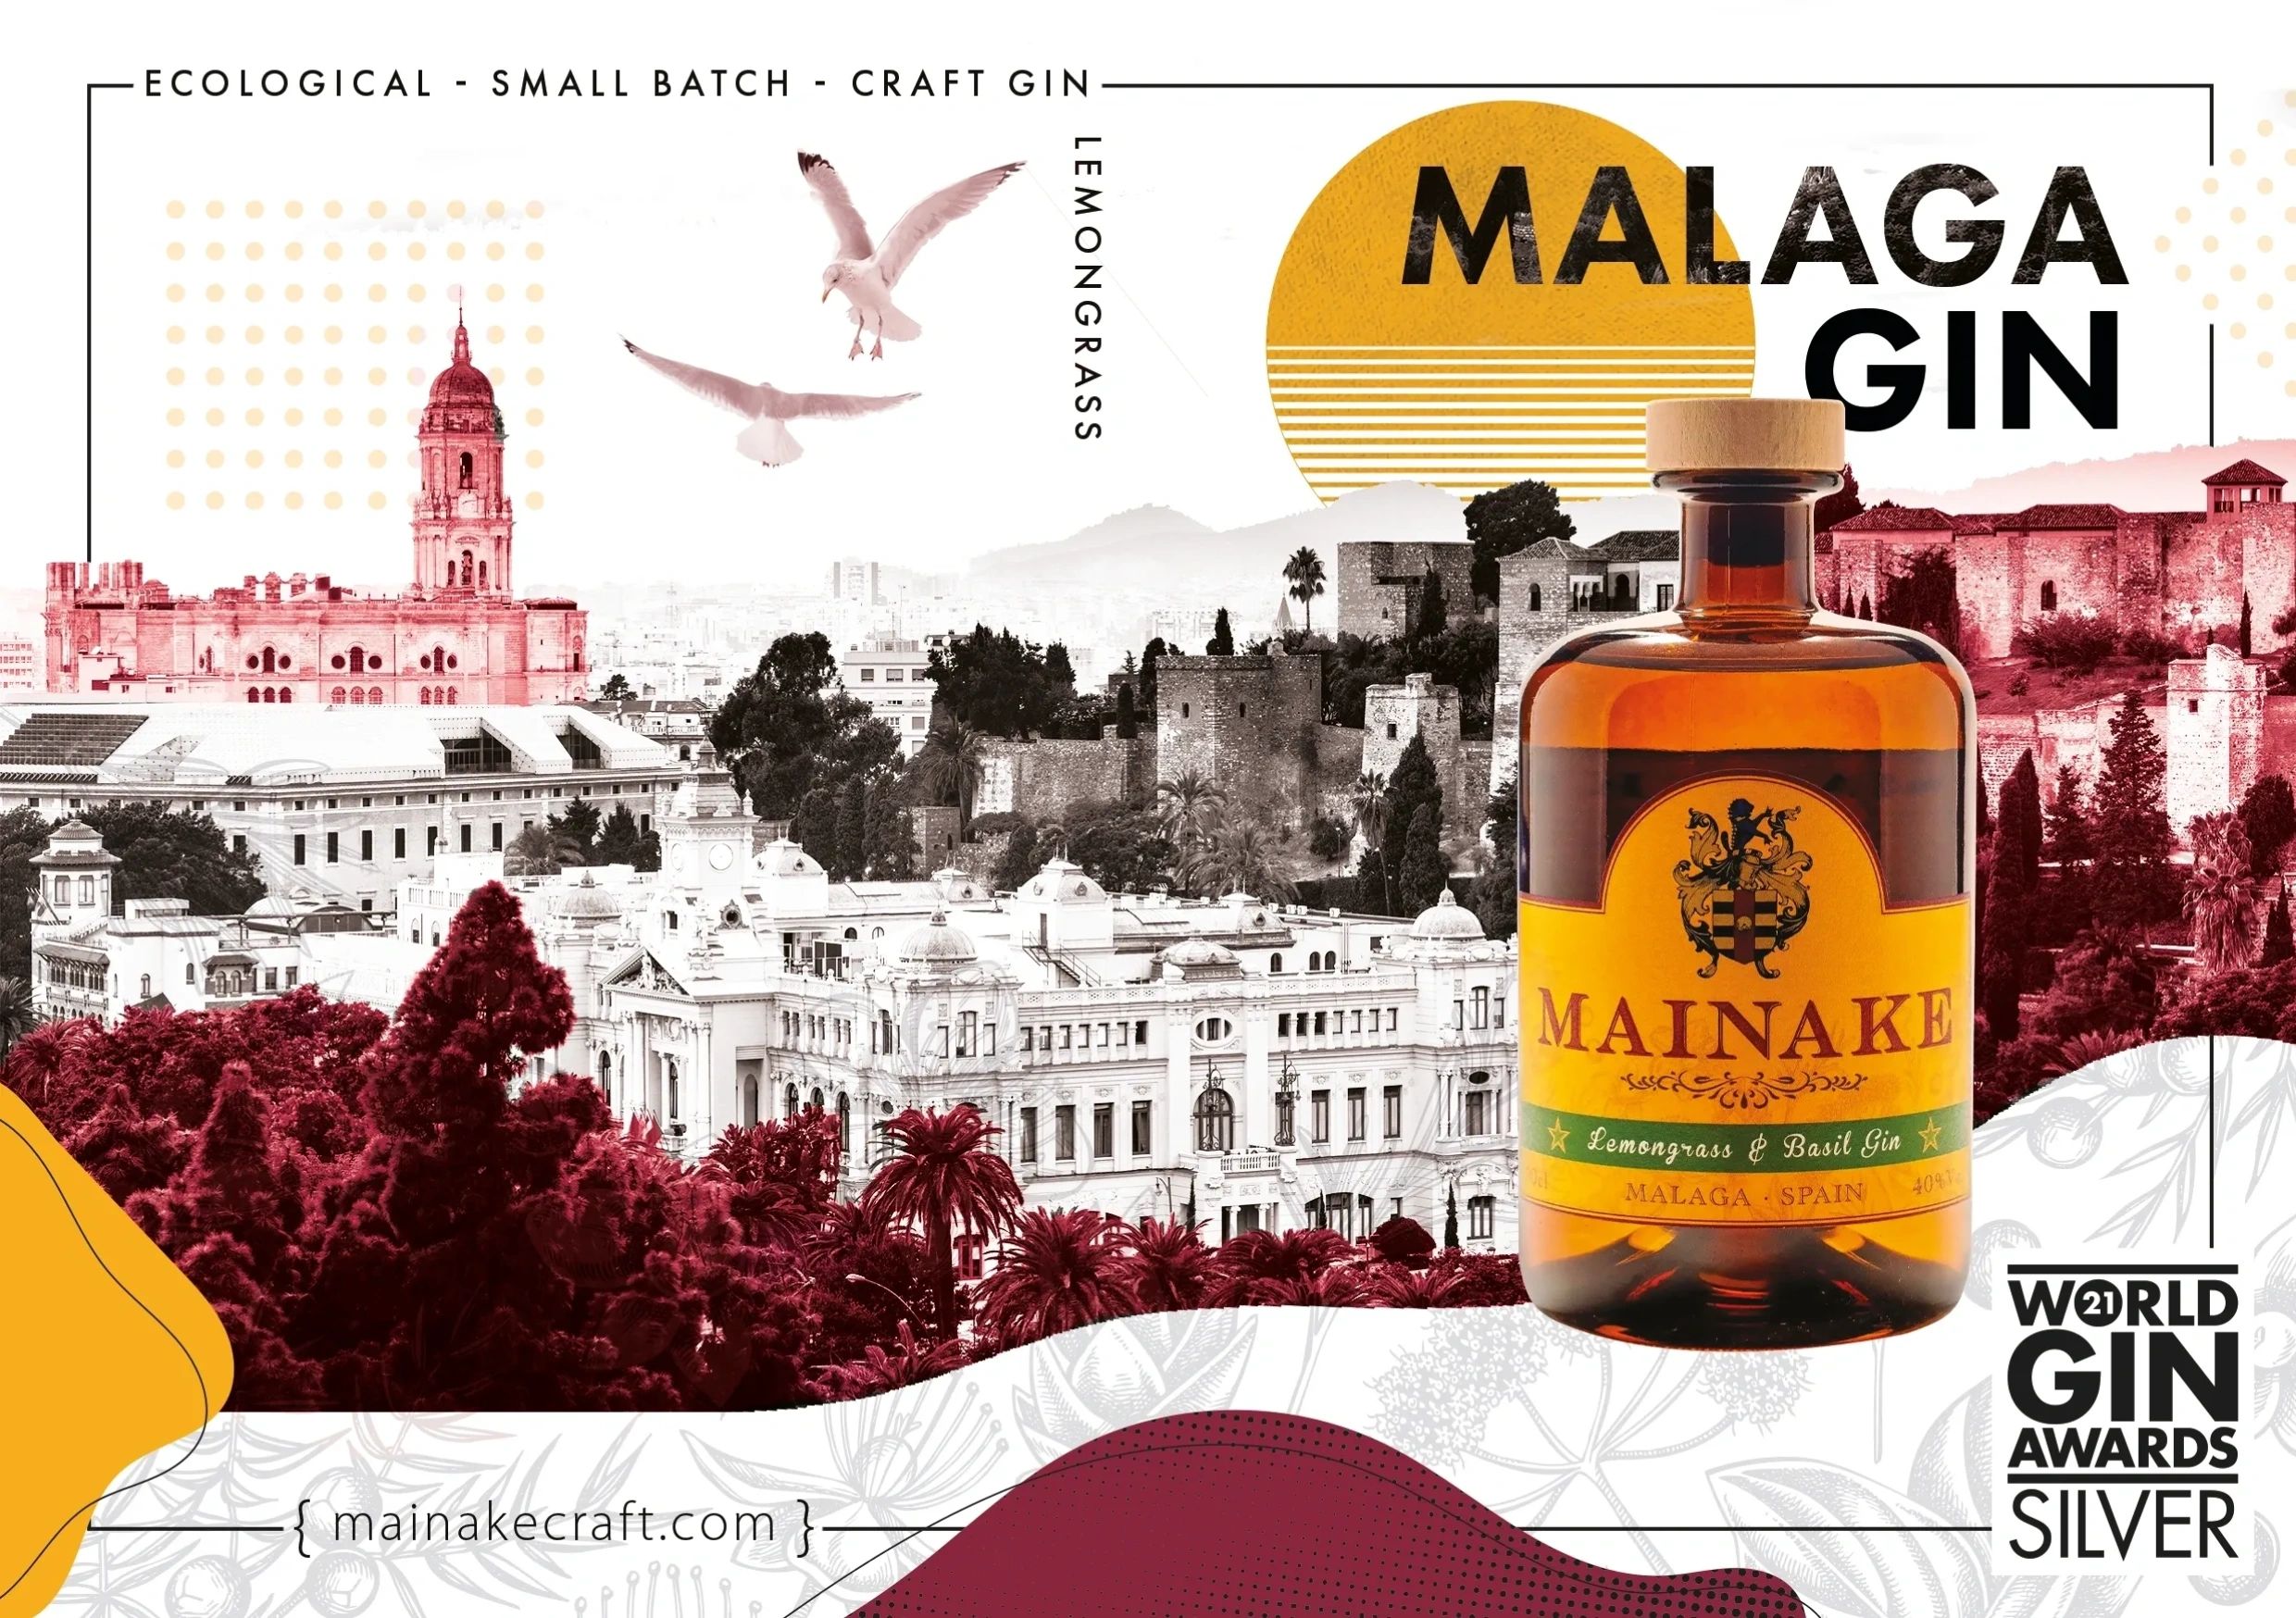 Malaga award winning gin Mainake is the Spirit of Malaga
